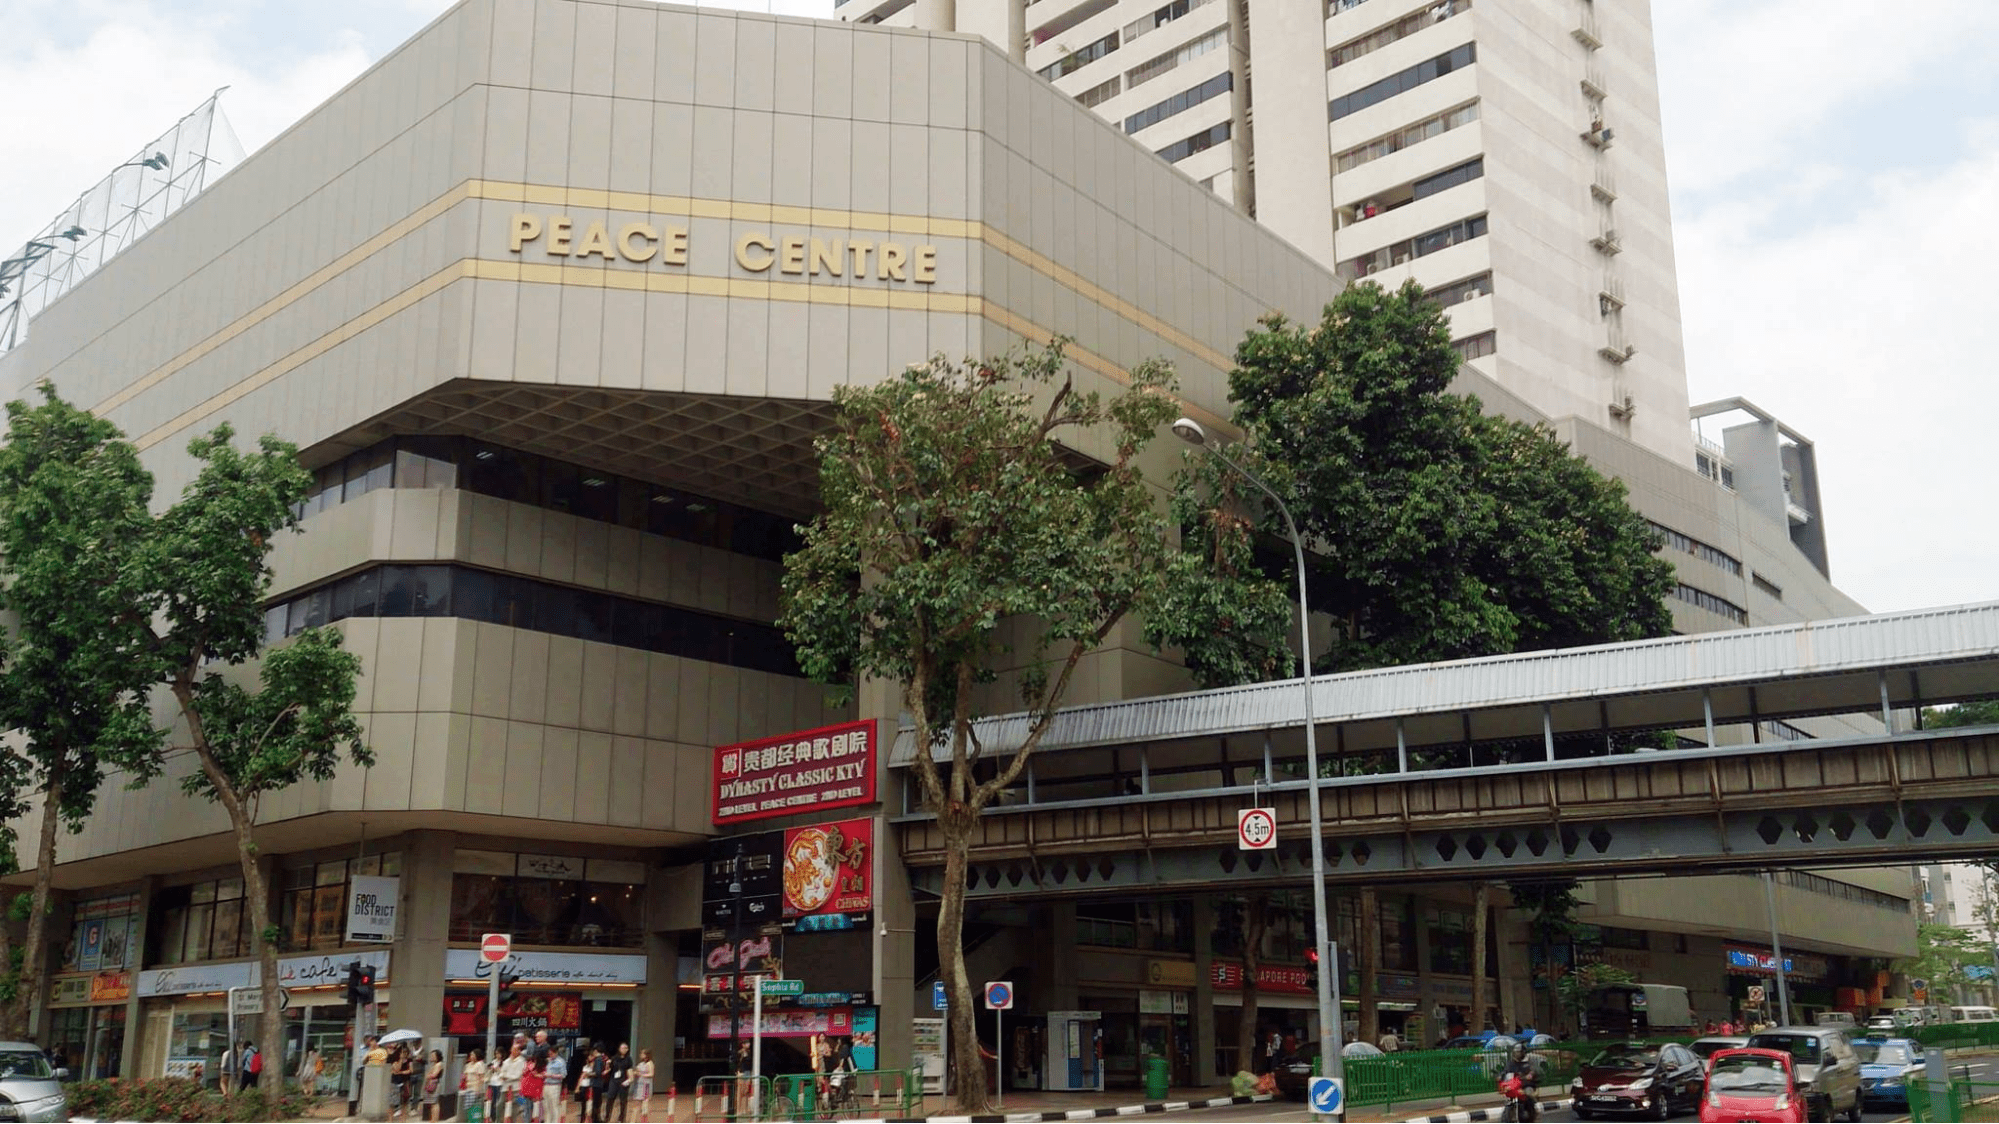 Peace Centre Exterior